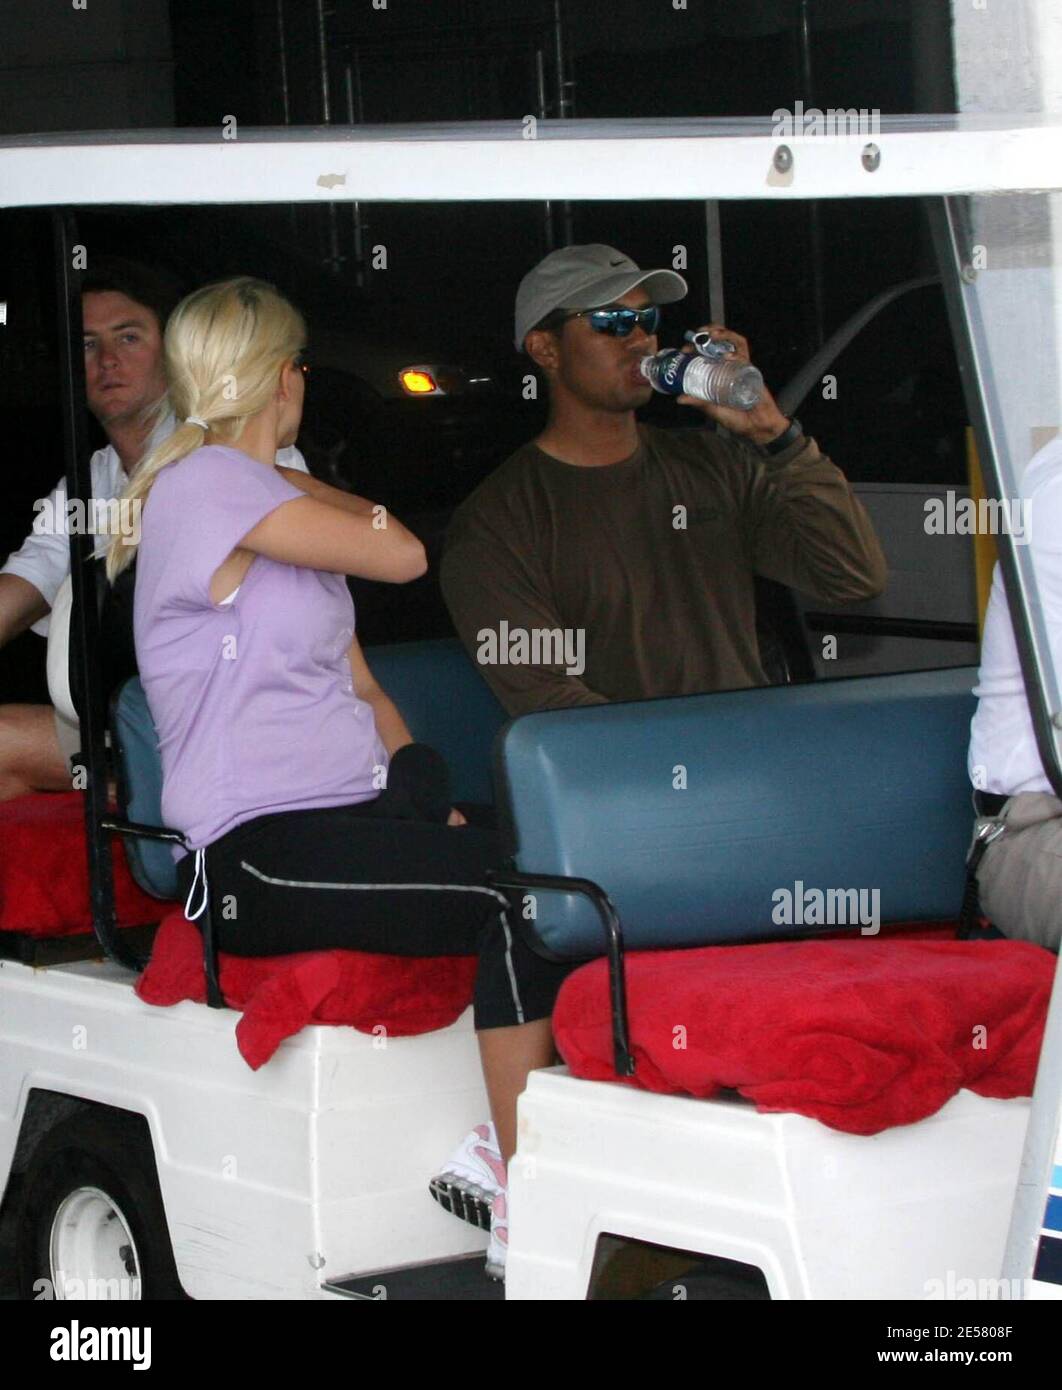 Exclusif !! La superstar du golf Tiger Woods et sa femme Elin font une pause de leur yacht « Privacy » pour aller à une salle de sport locale. Même si Elin est enceinte et montre, elle aime toujours s'y mettre et rester en forme. Miami Beach, Floride, 3/25/07 [[tag]] Banque D'Images